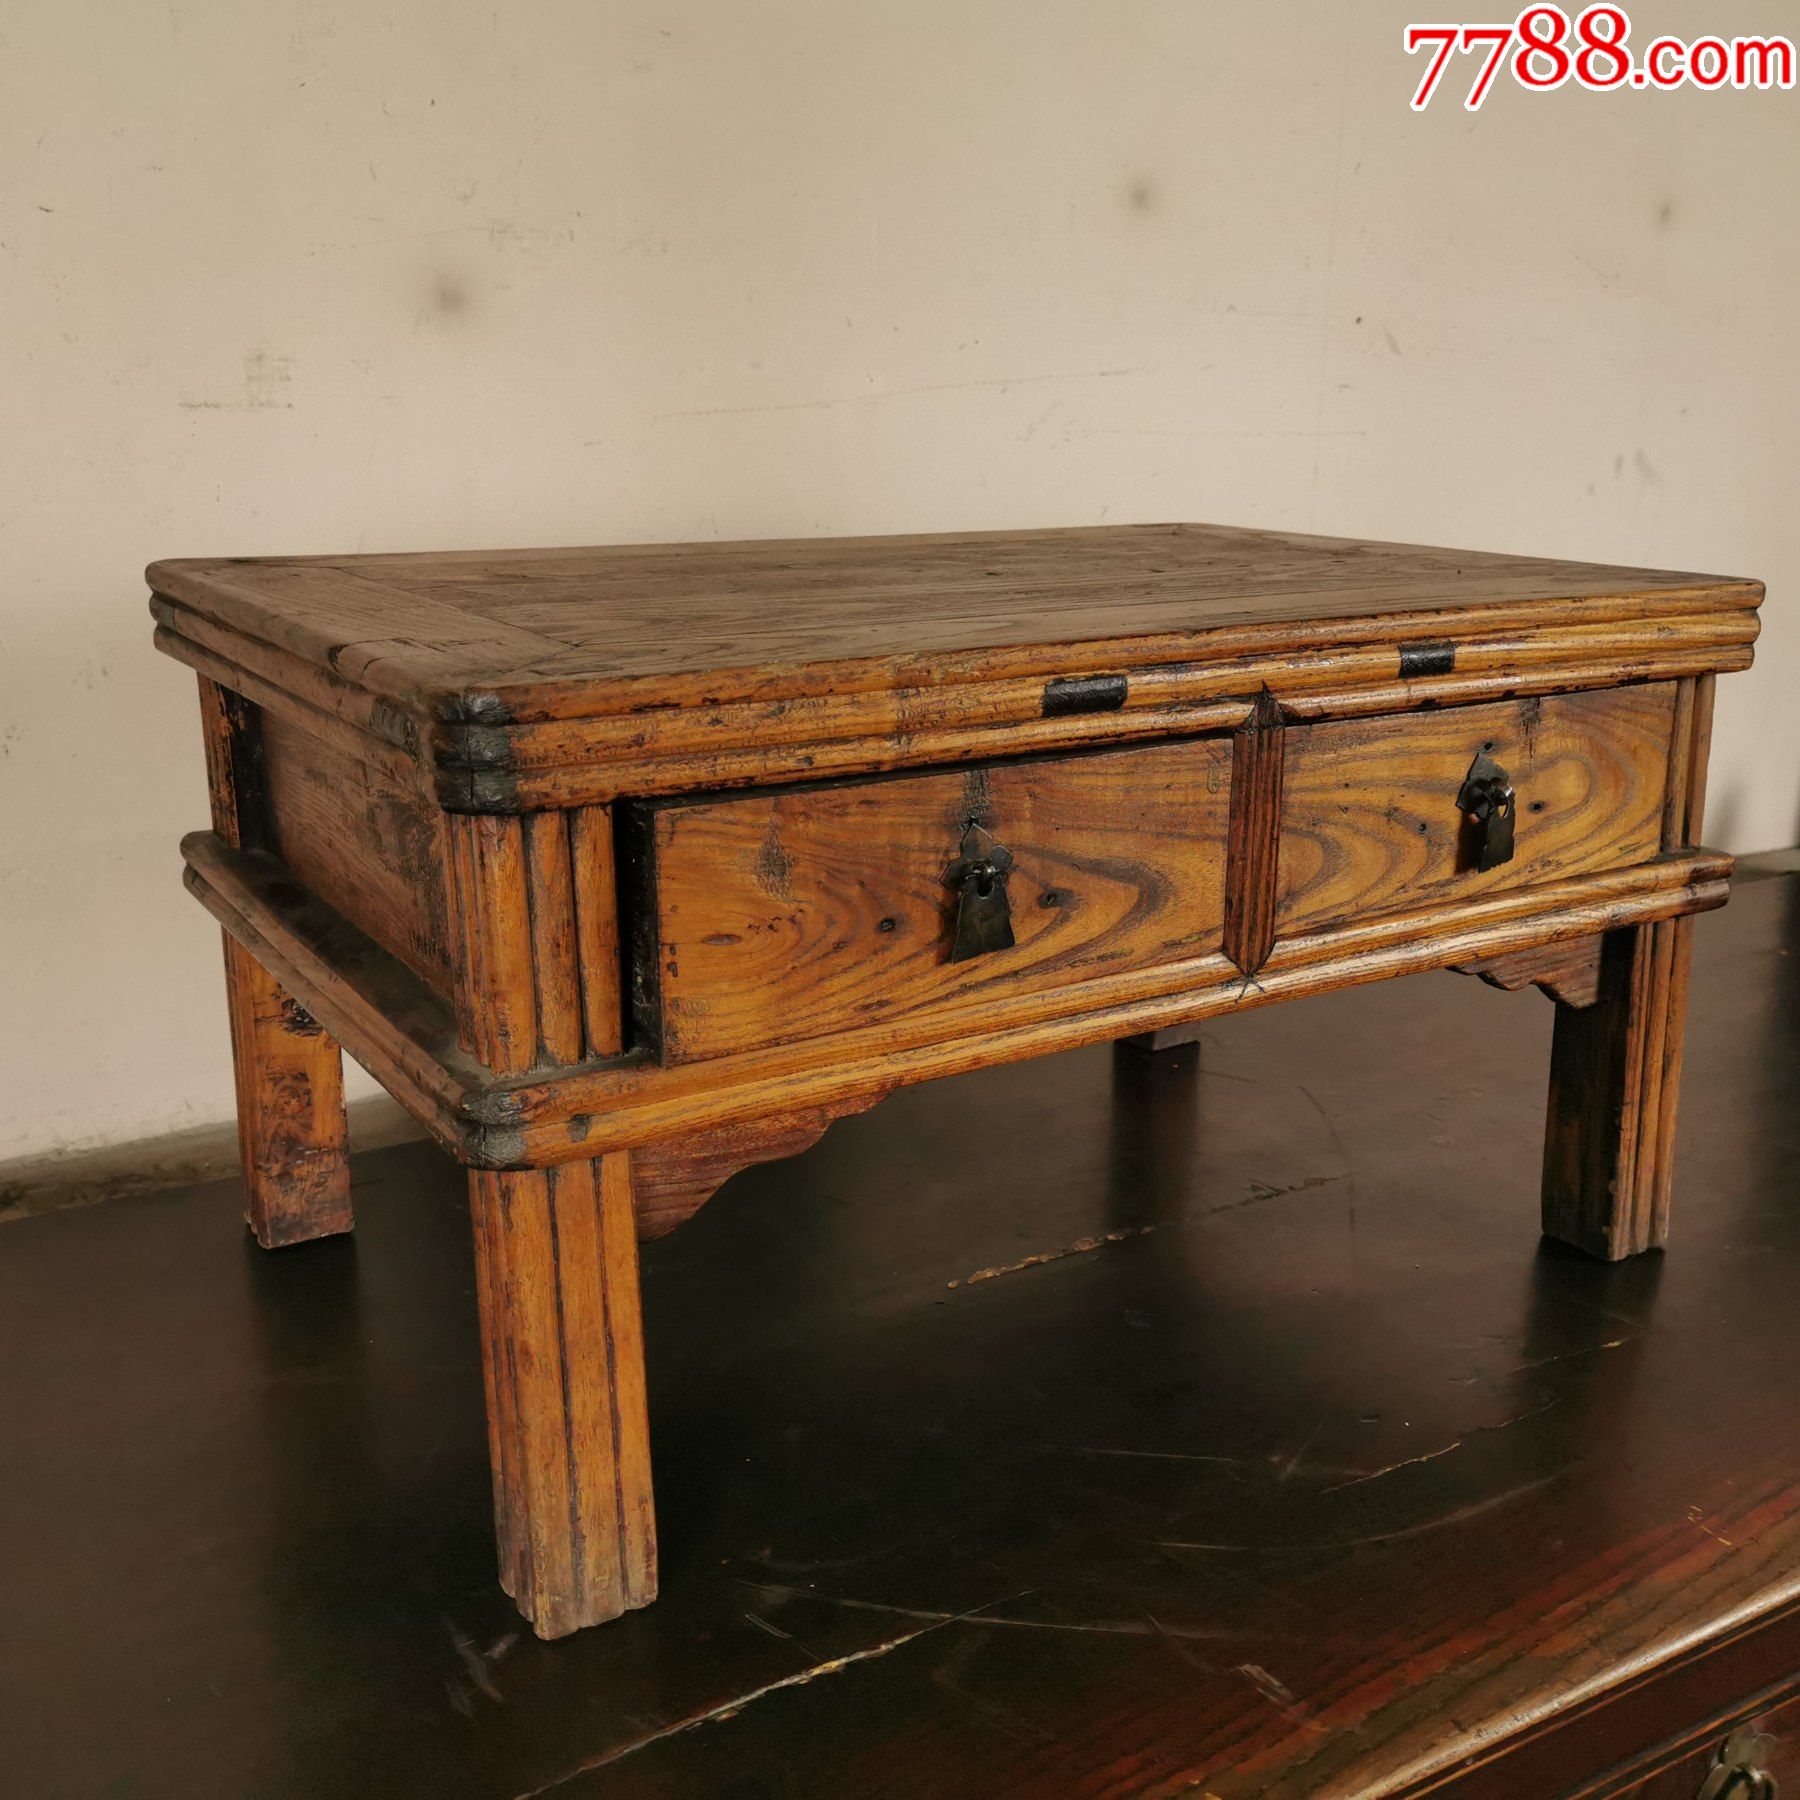 民国榆木书桌方桌子双屉竹节炕桌矮桌木器家具古玩古董收藏老物件